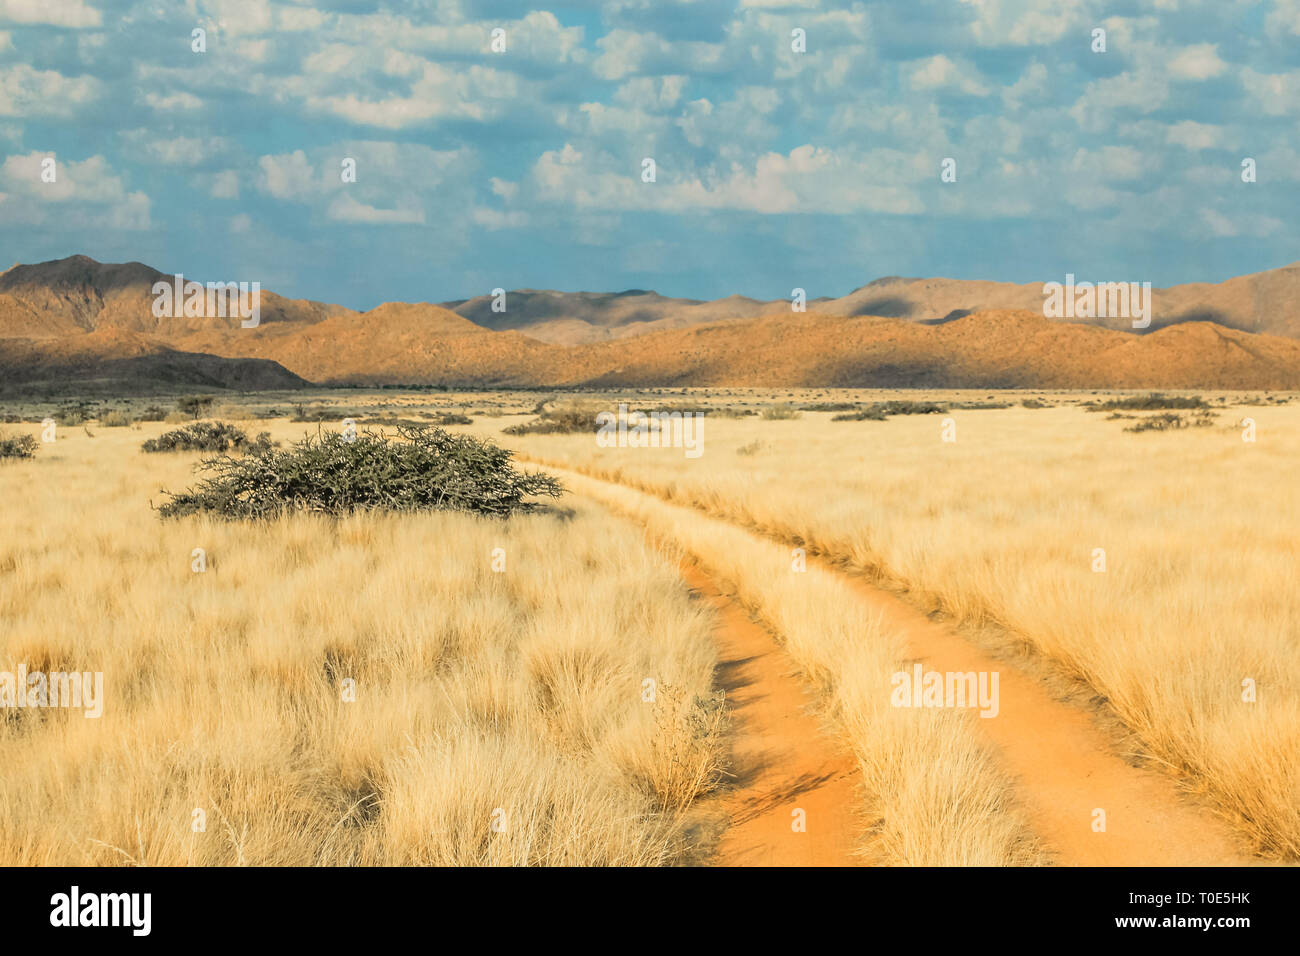 Route de terre dans un paysage désert au coucher du soleil. Solitaire, la Namibie, l'Afrique. . Banque D'Images